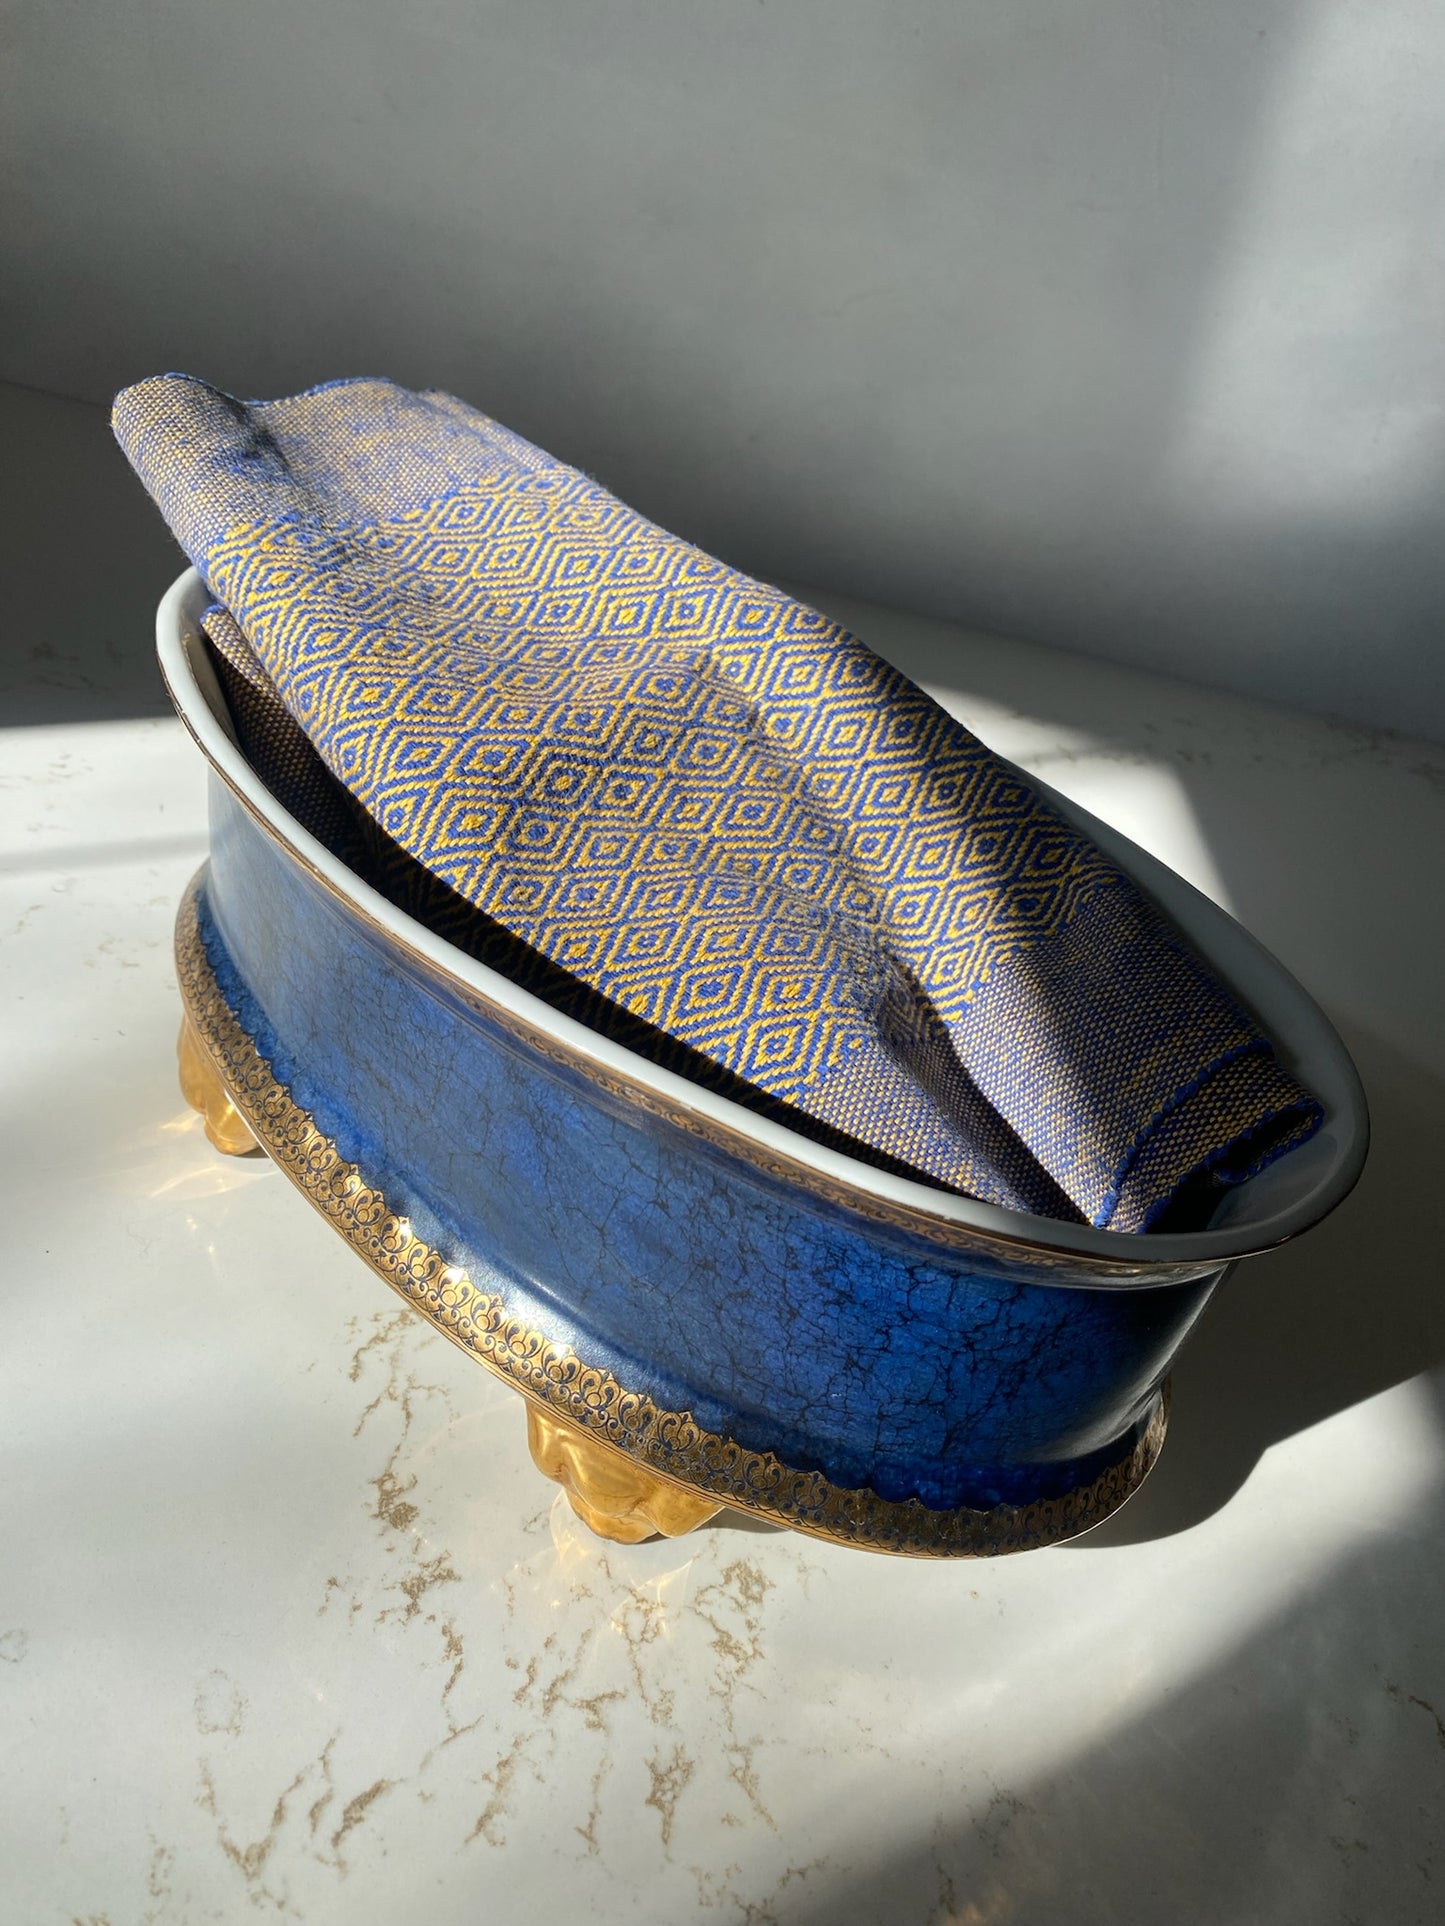 Royal Blue & Gold Porcelain Centerpiece Bowl